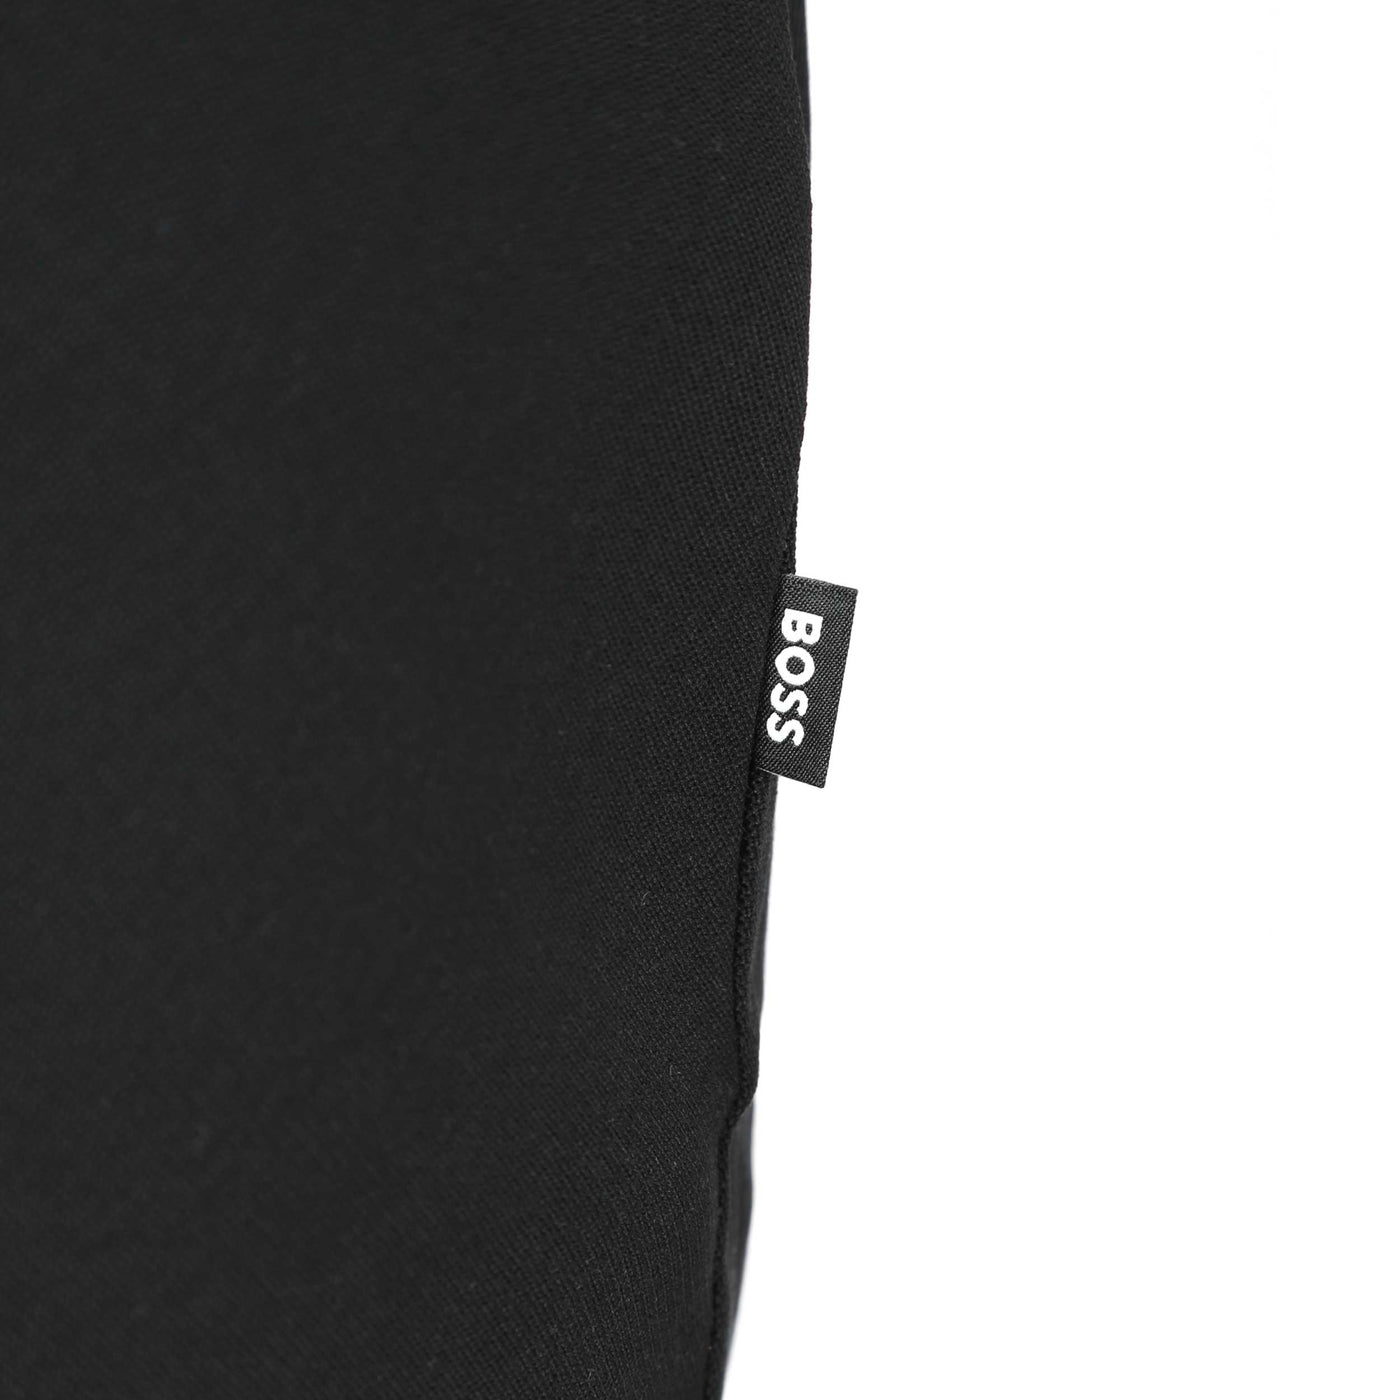 BOSS Tiburt 323 T Shirt in Beige, White & Black